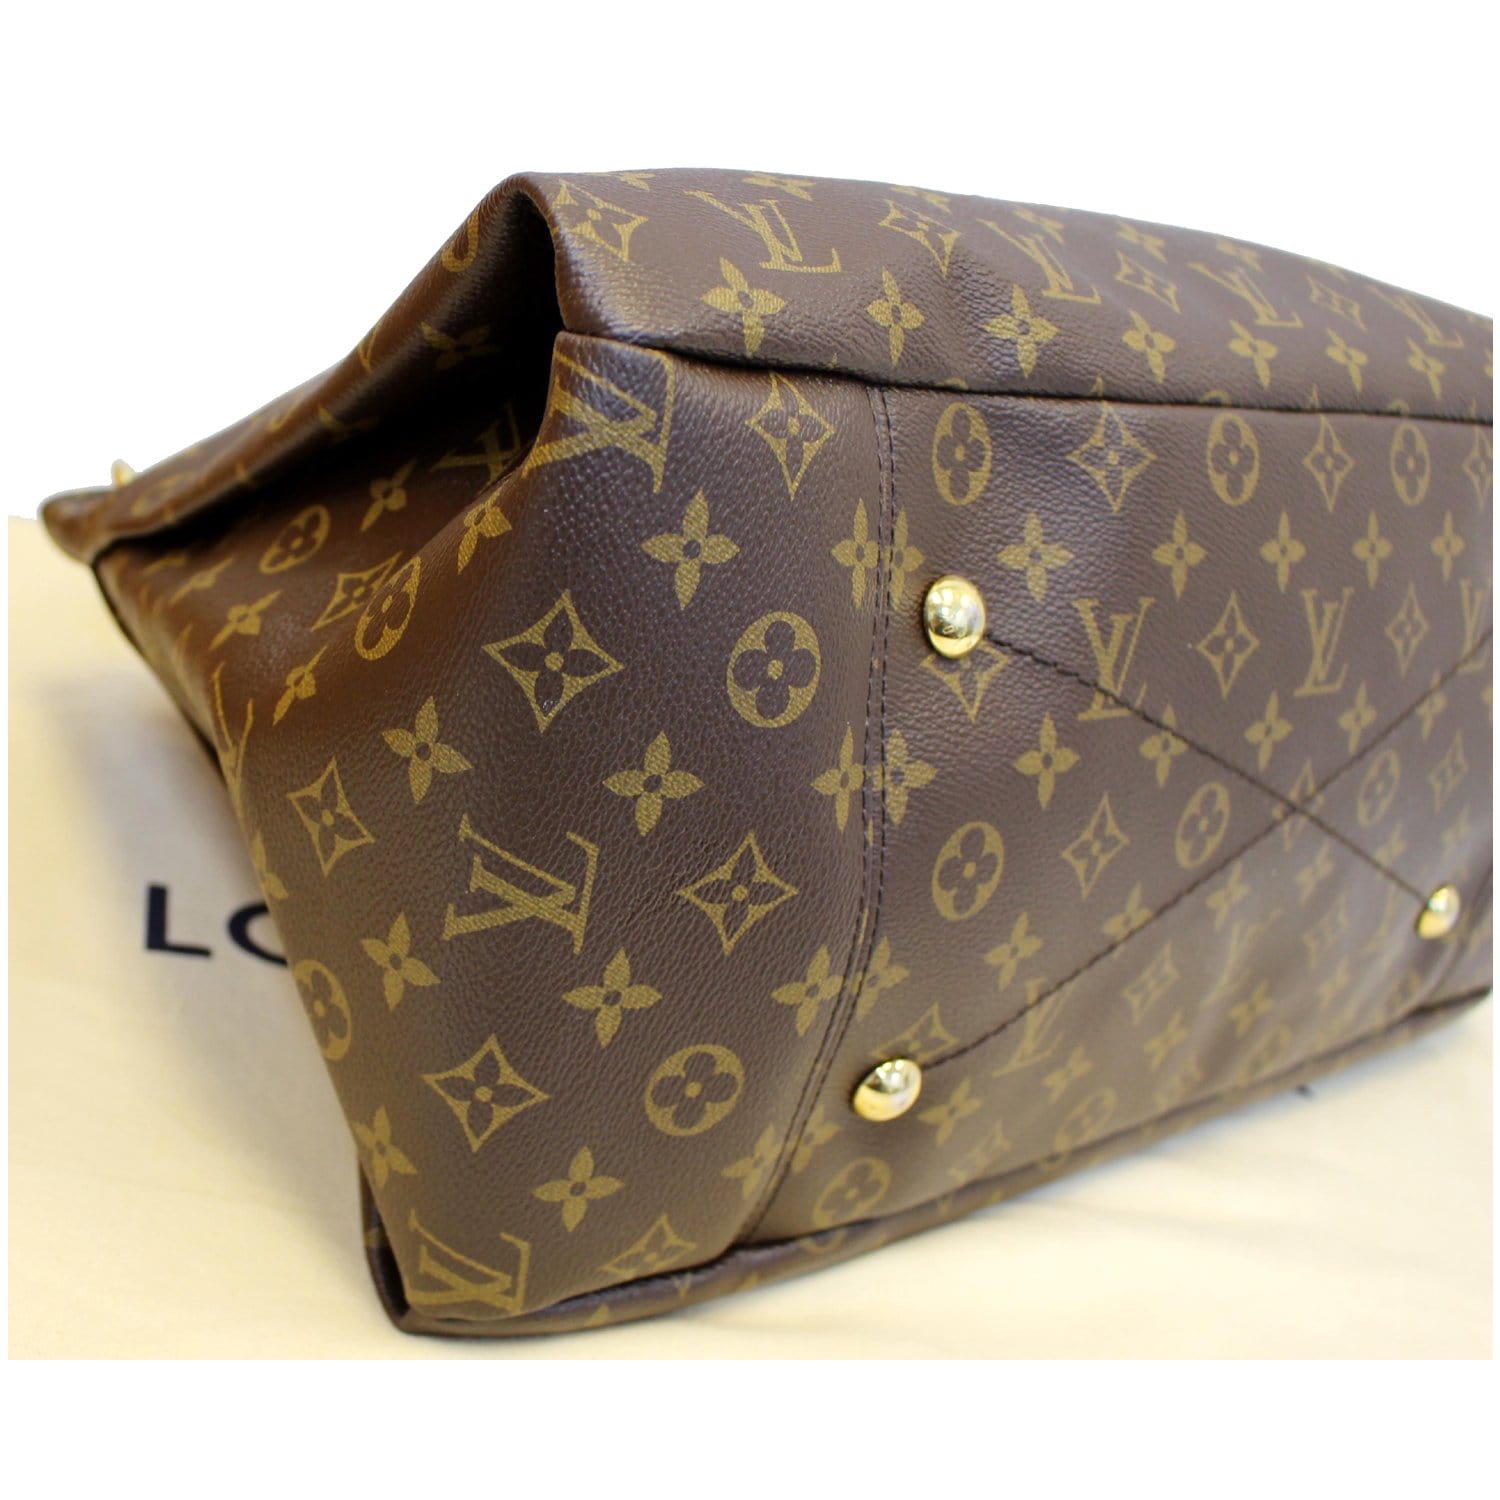 🌸Louis Vuitton Artsy MM Monogram Shoulder Bag Tote Purse (CA2143) + Dust  Bag🌸